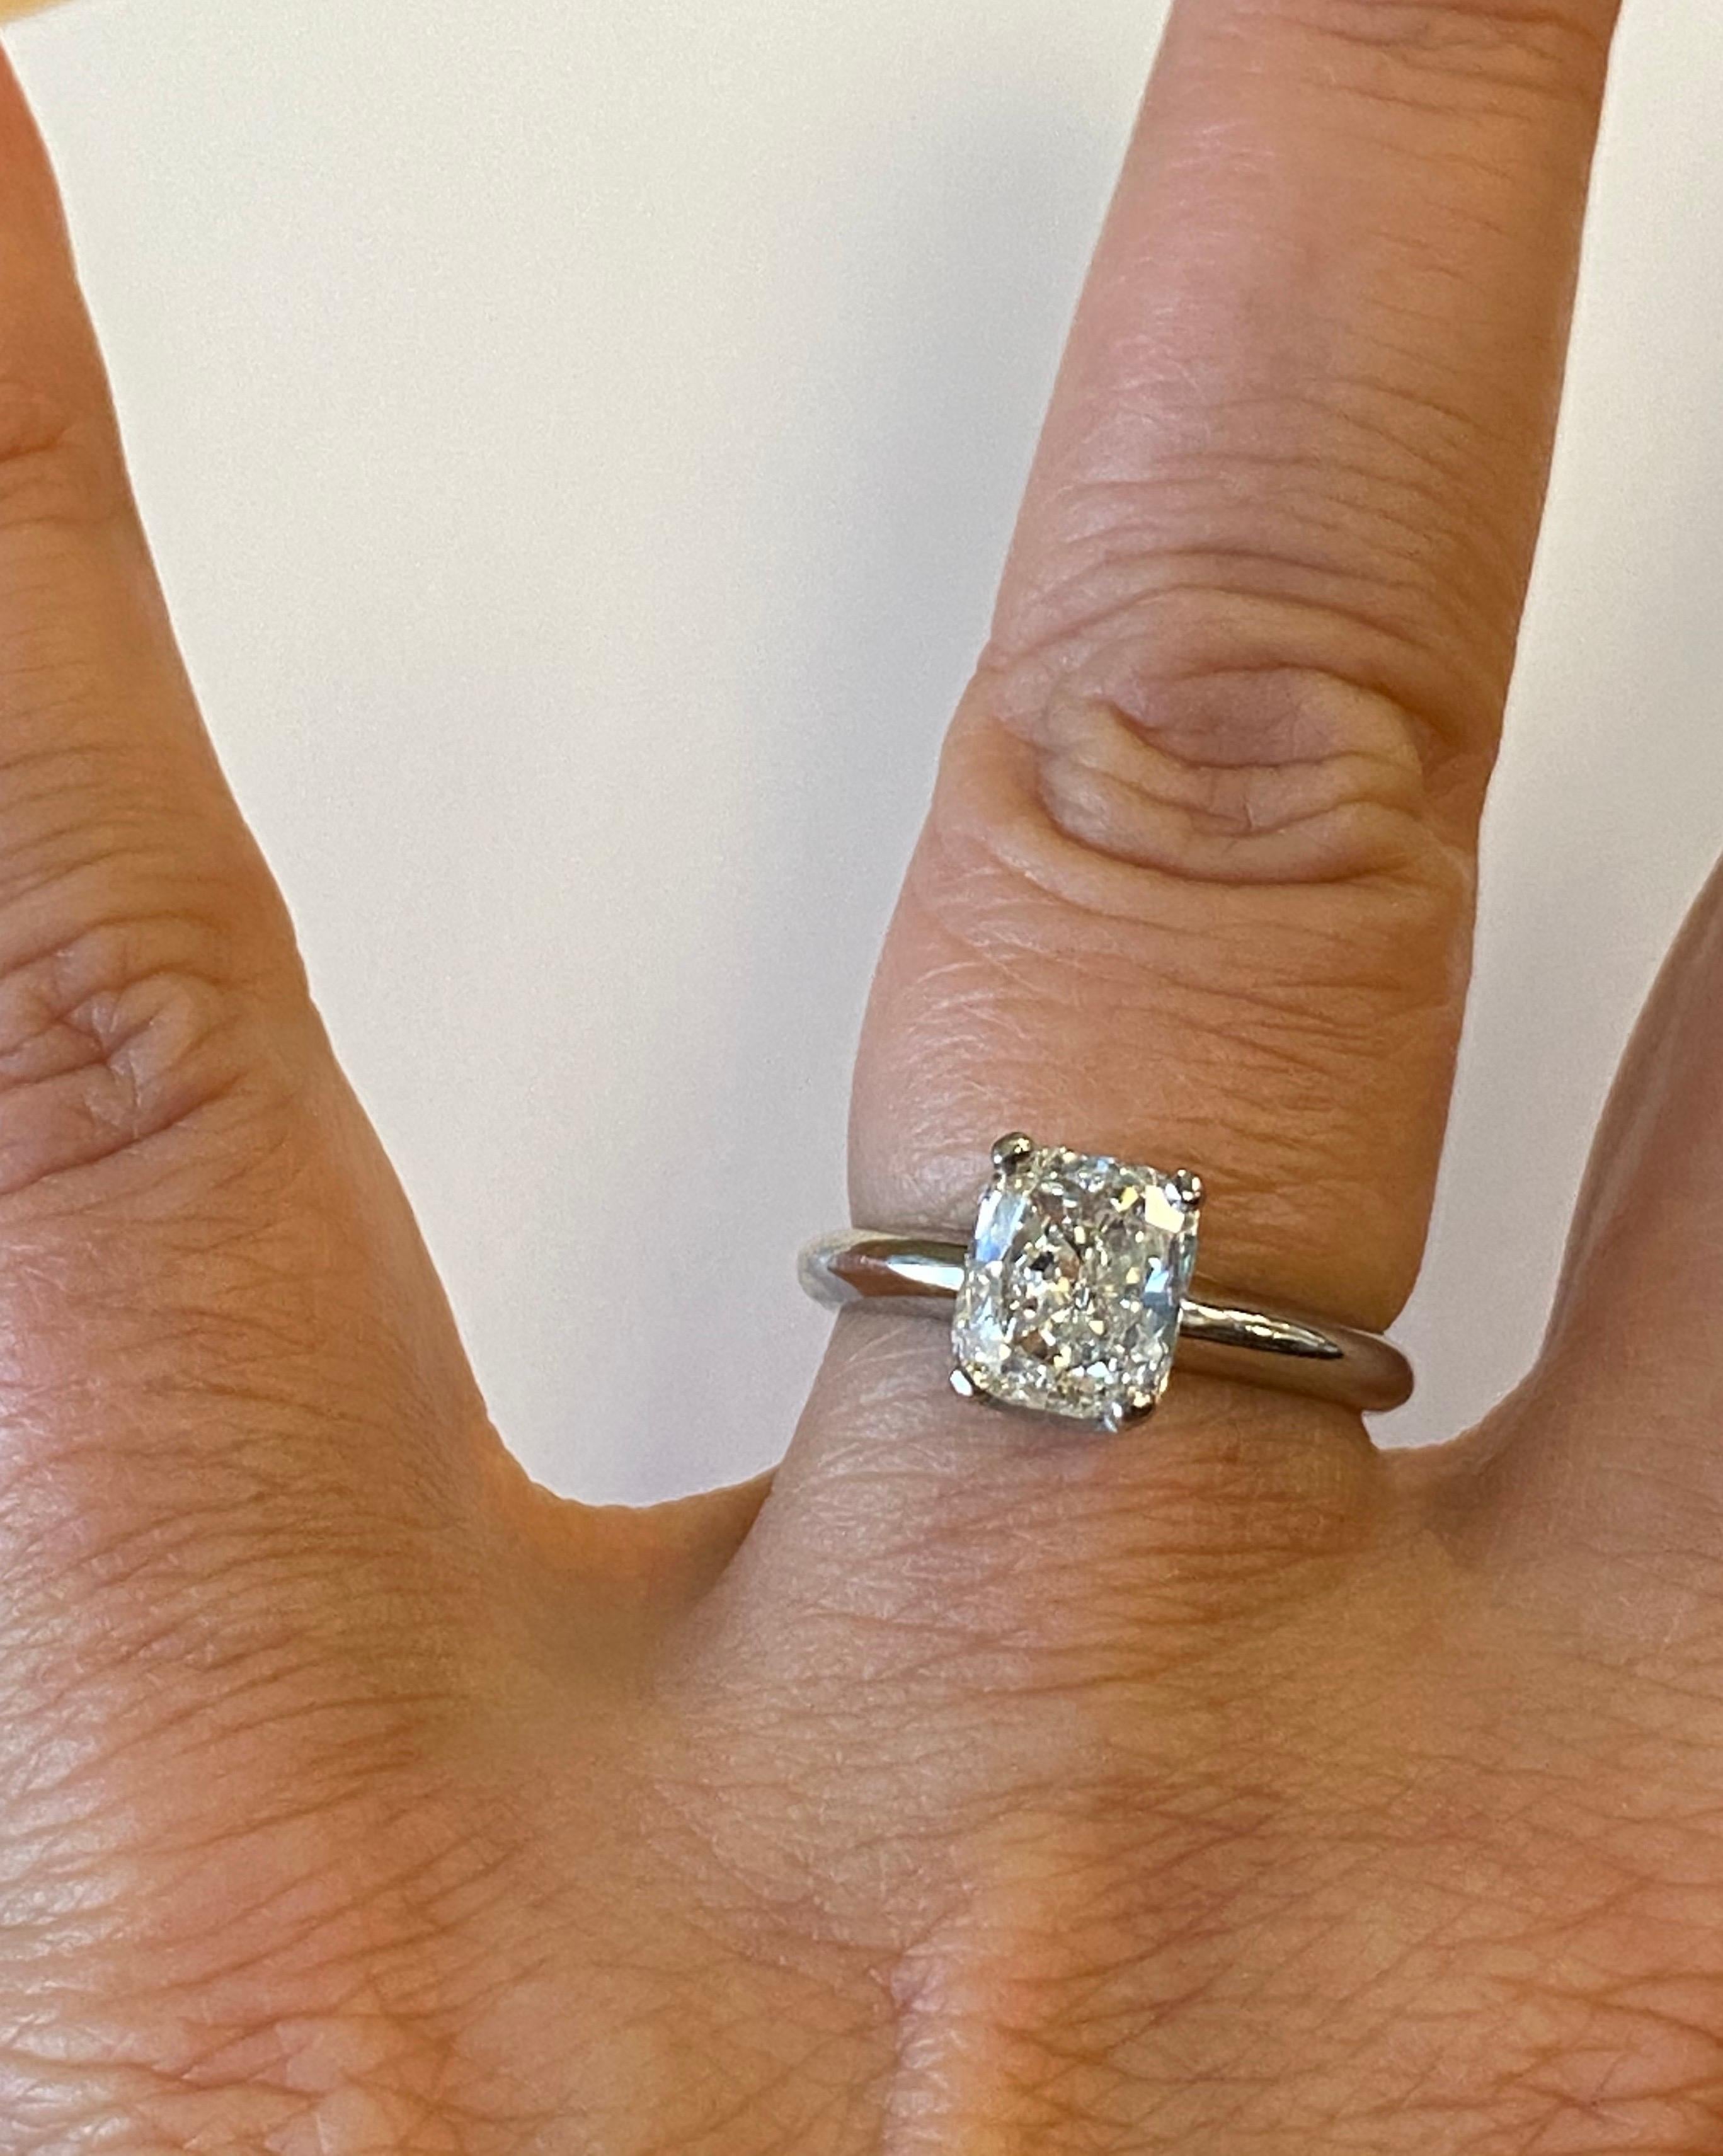 Bague de fiançailles en platine à quatre branches, sertie au centre d'un diamant de forme coussin certifié par le GIA, pesant 1,52 ct, couleur I, pureté VS2.
Doigt 6, peut être dimensionné.
Vendue au détail 12 500